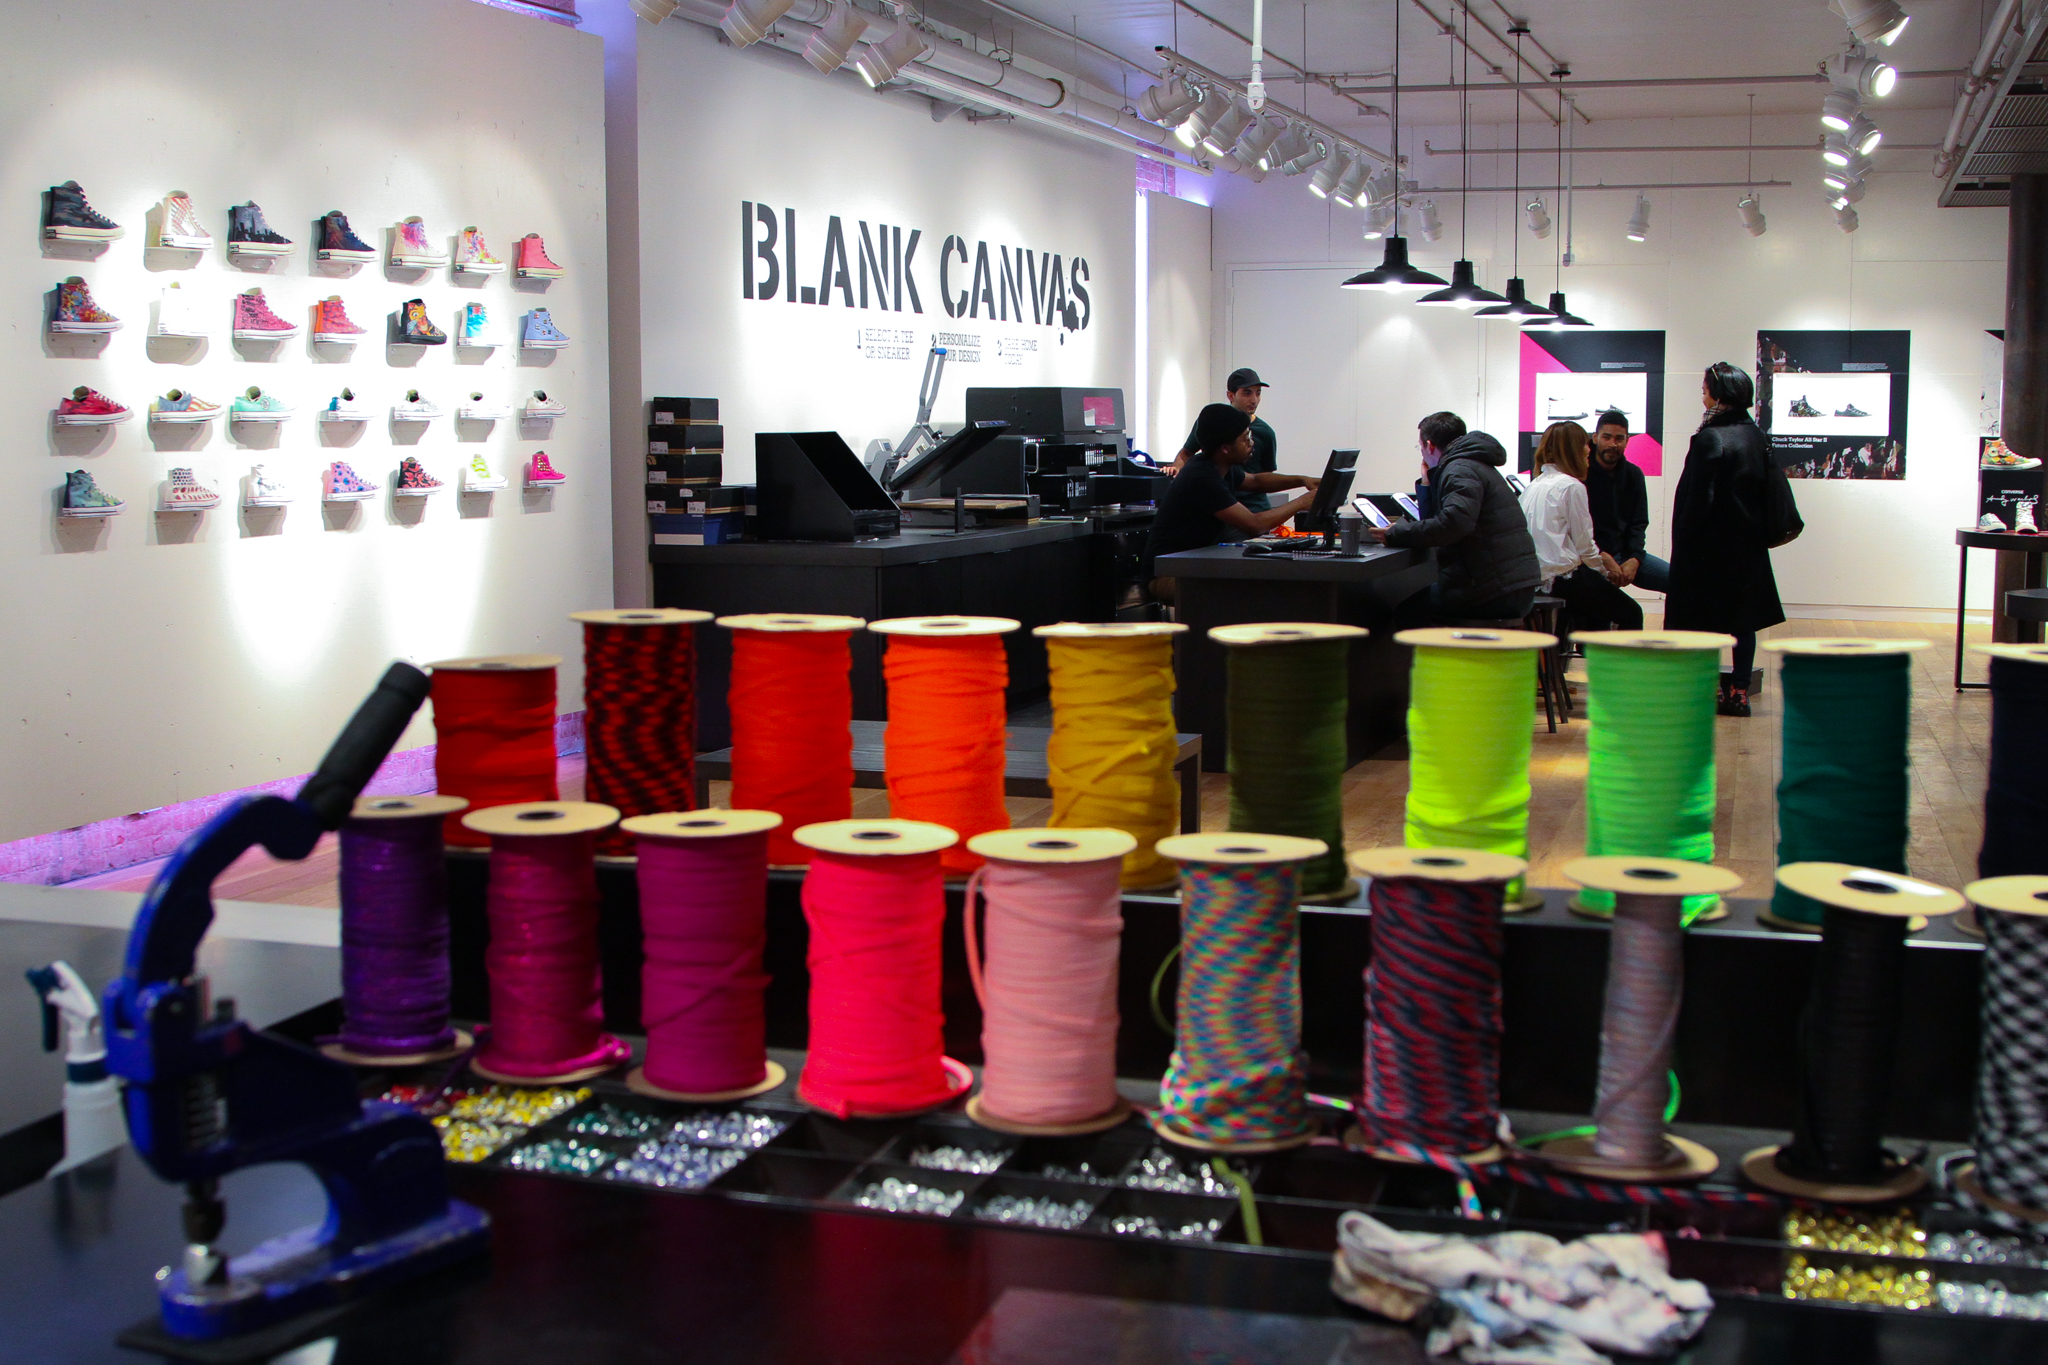 Escarpa de primera categoría Noveno Behind the scenes at Converse's in-store 'Blank Canvas' customization shop  - Digiday